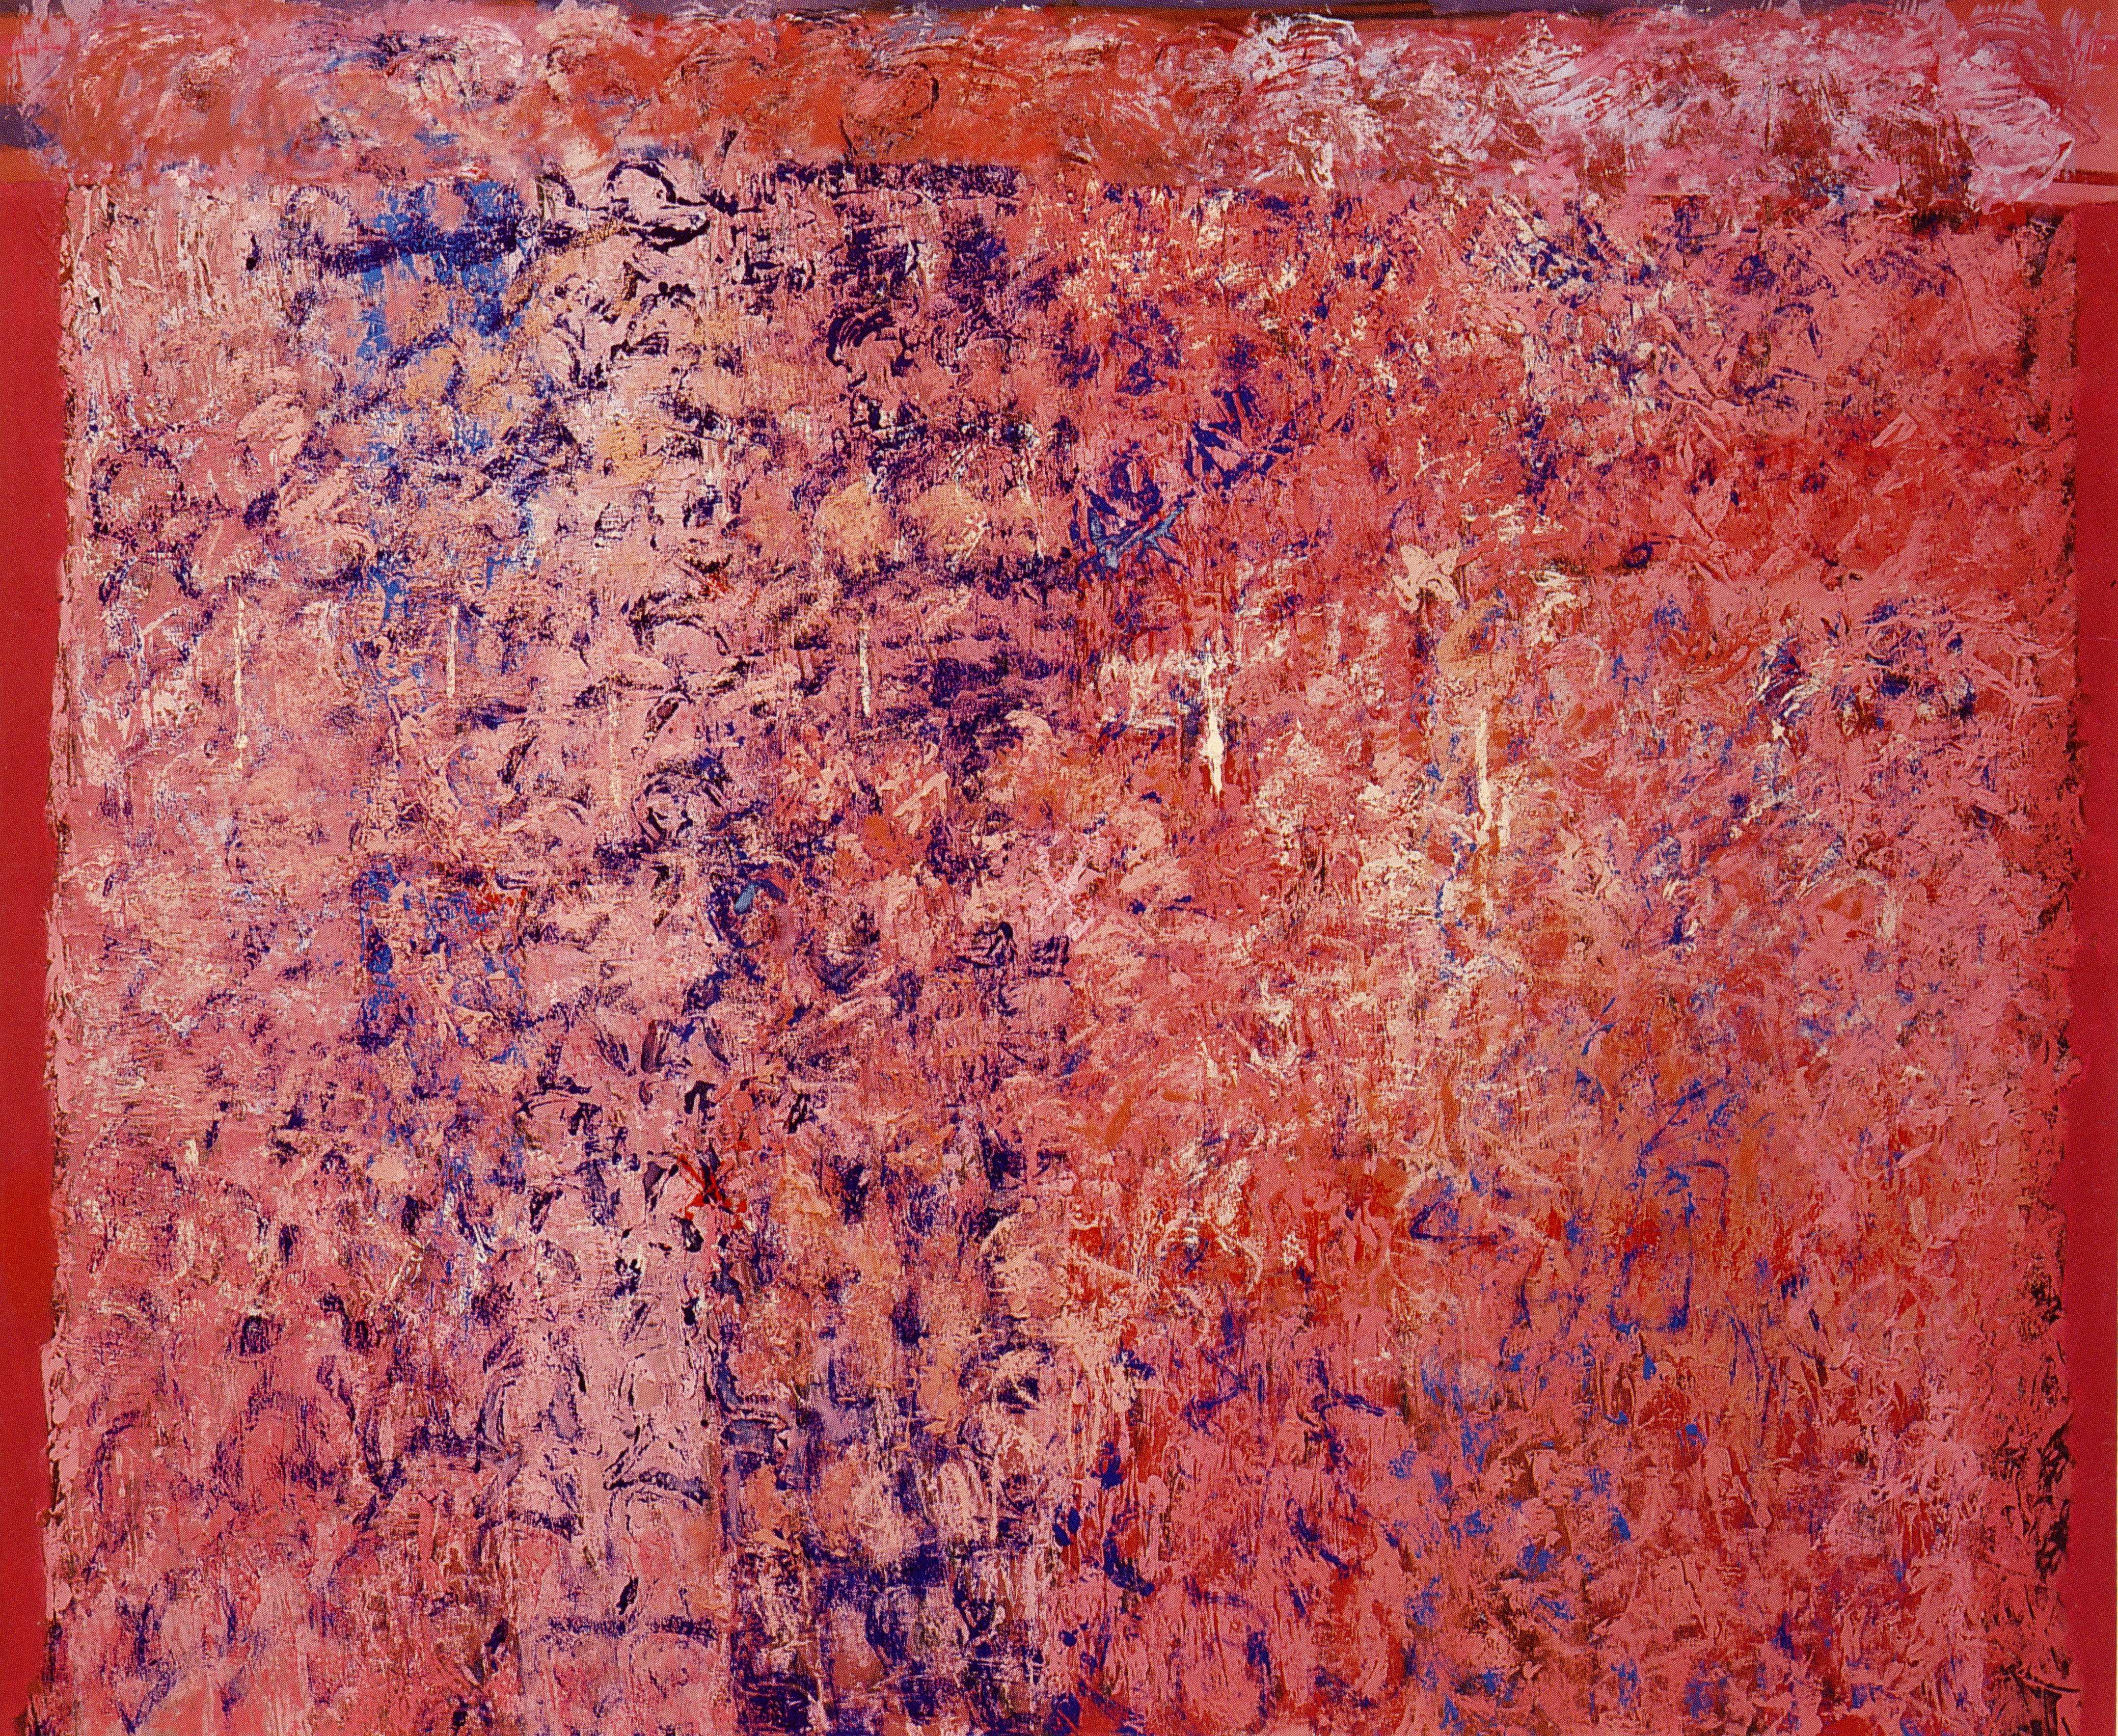 Painting by Joe Overstreet, Gorée, 1993